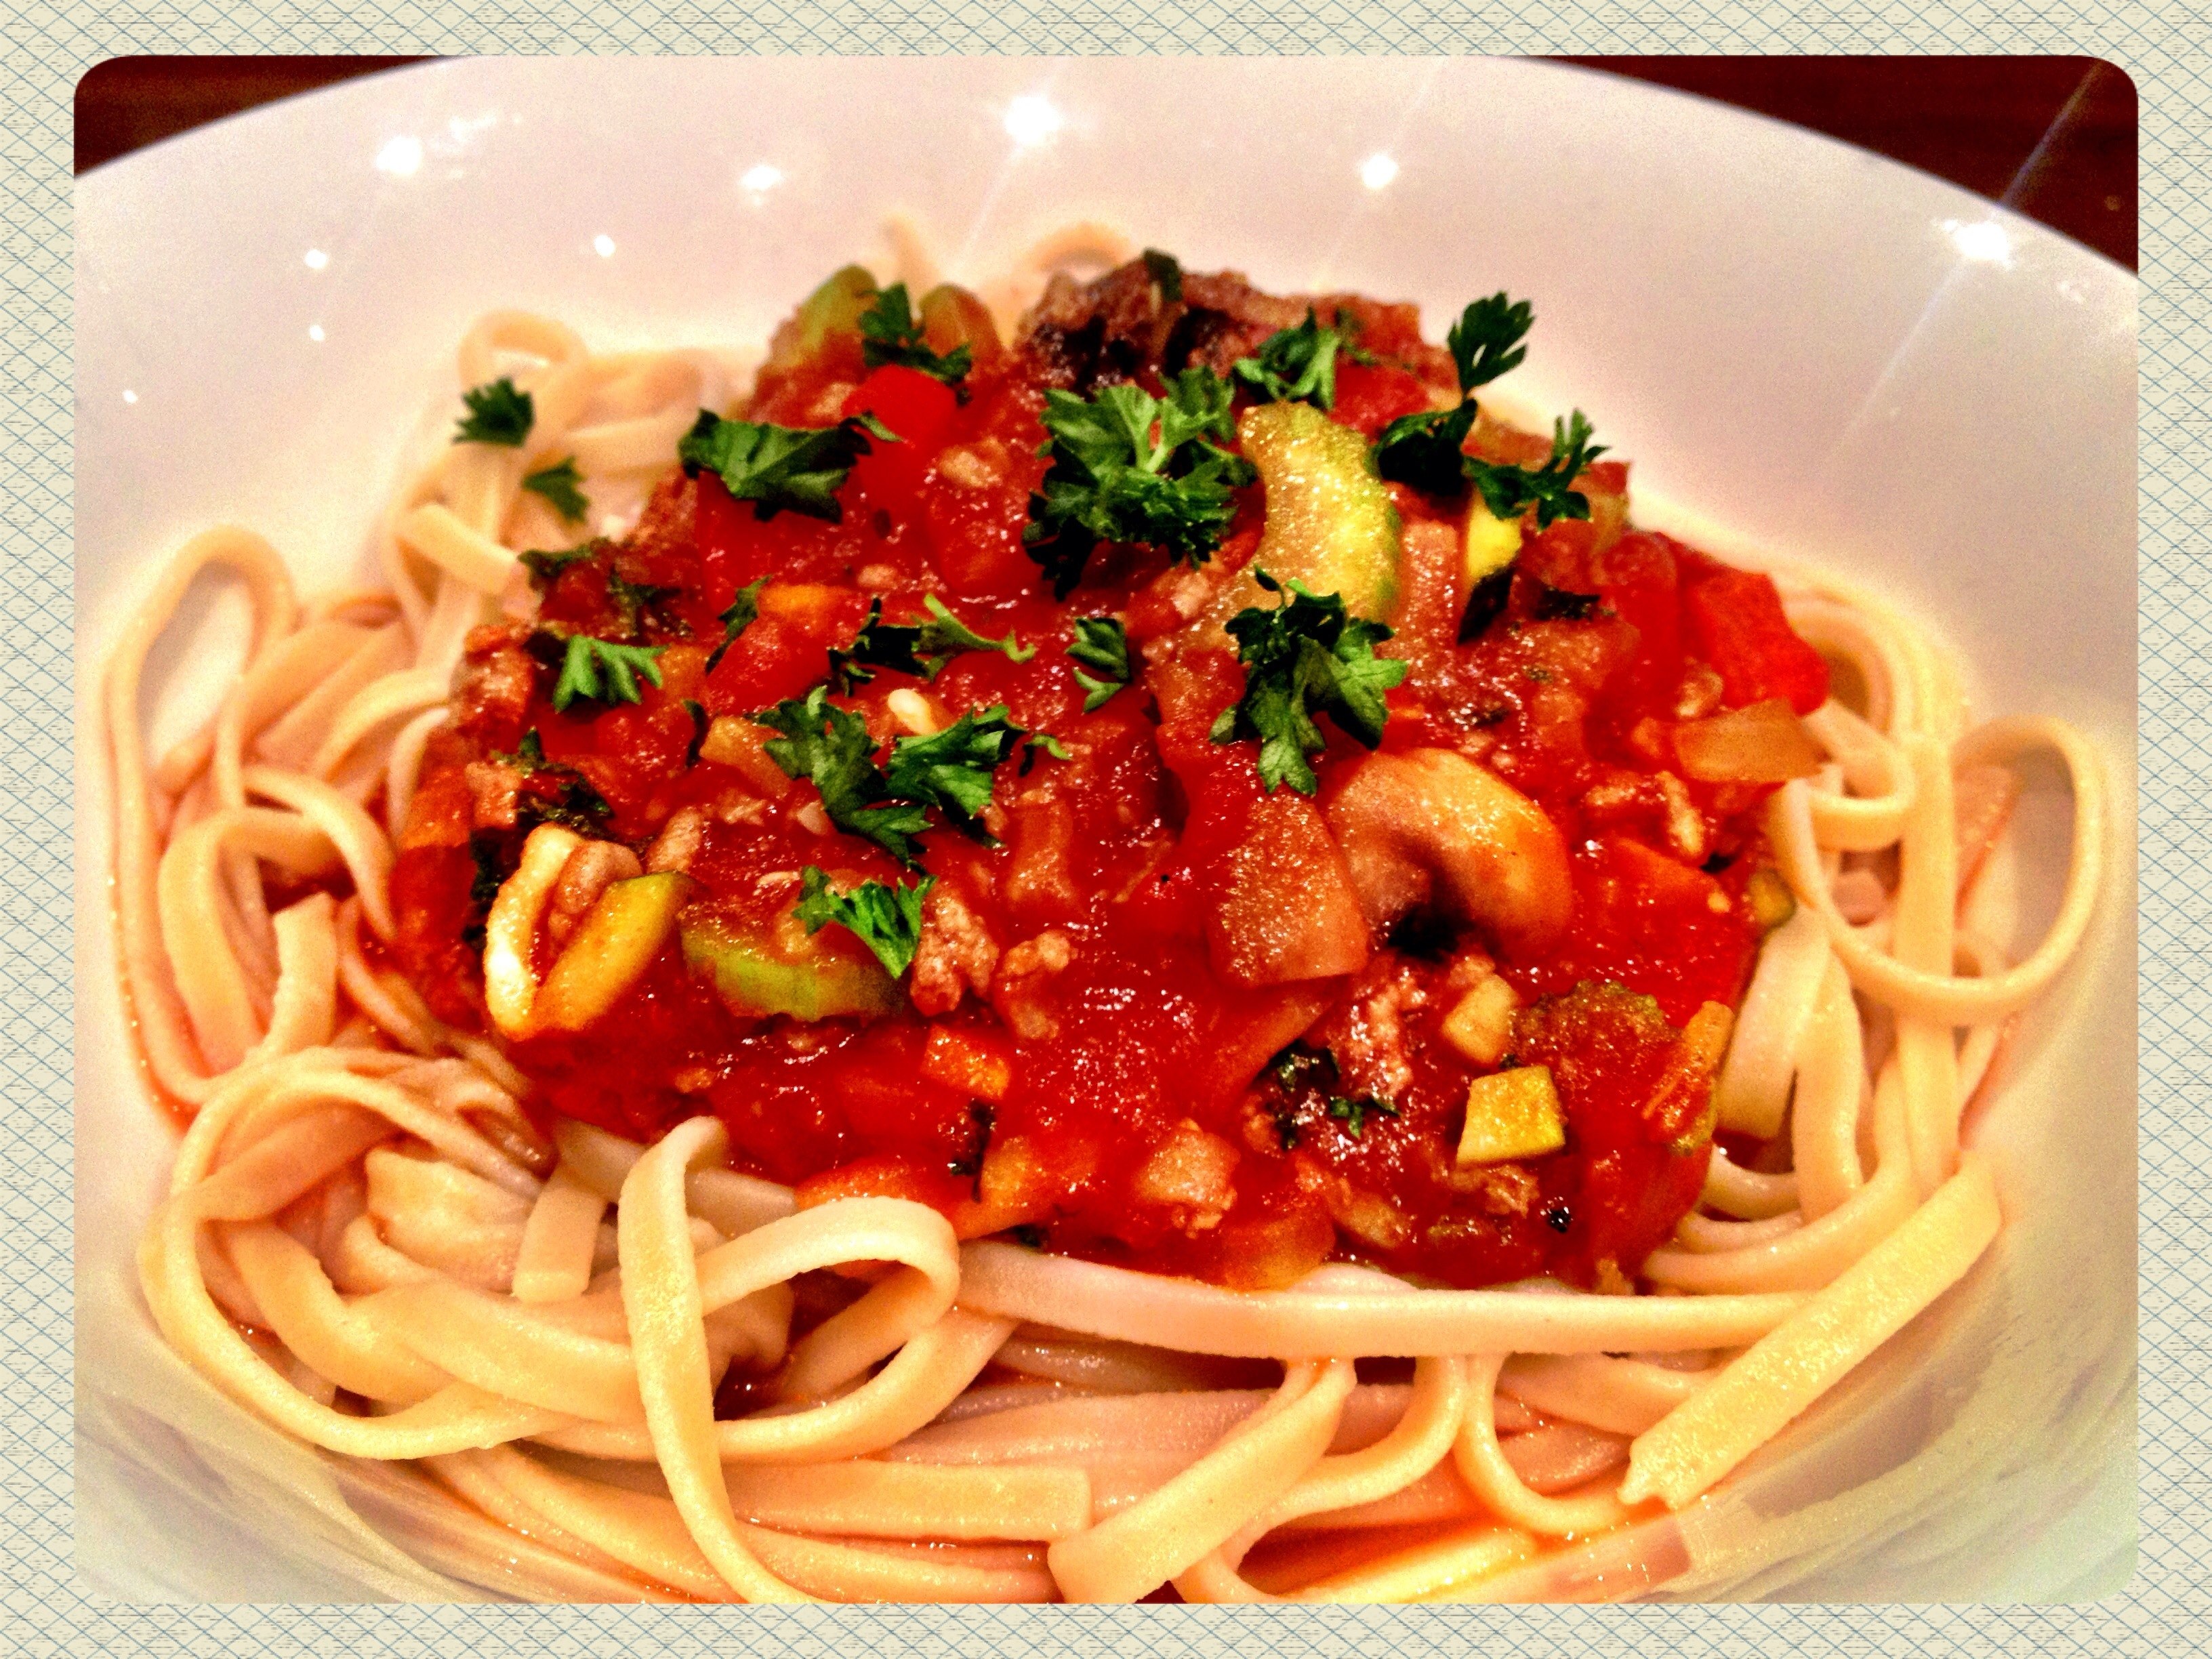 Спагетти болоньезе томатная паста. Макароны с томатной пастой. Спагетти болоньезе. Болоньезе с овощами. Паста болоньезе с овощами.